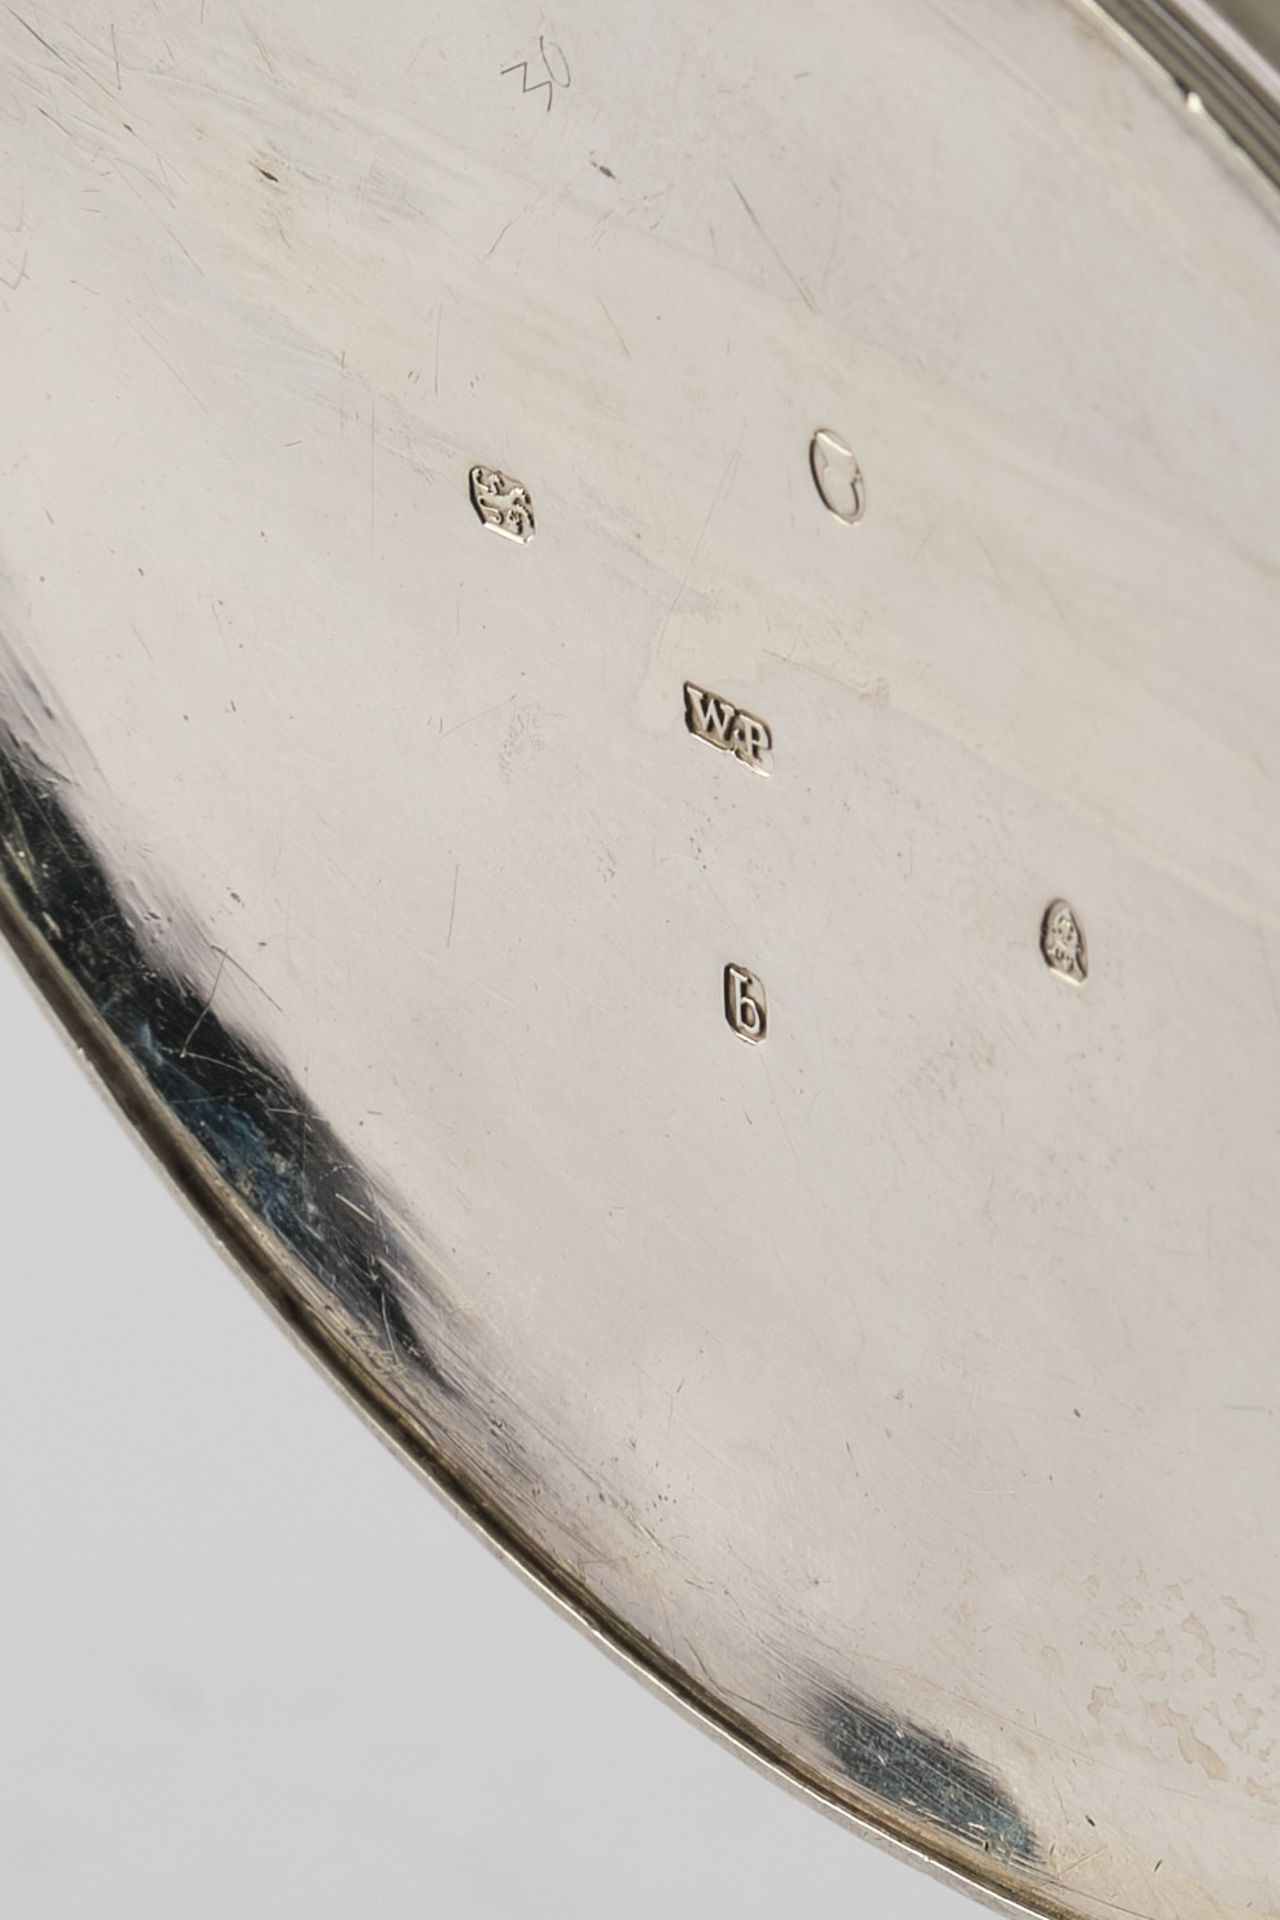 Teekanne, Silber 925, London, 1791, William Plummer, spitzovale Steilwandform, zwei Kartuschen, dav - Bild 3 aus 3